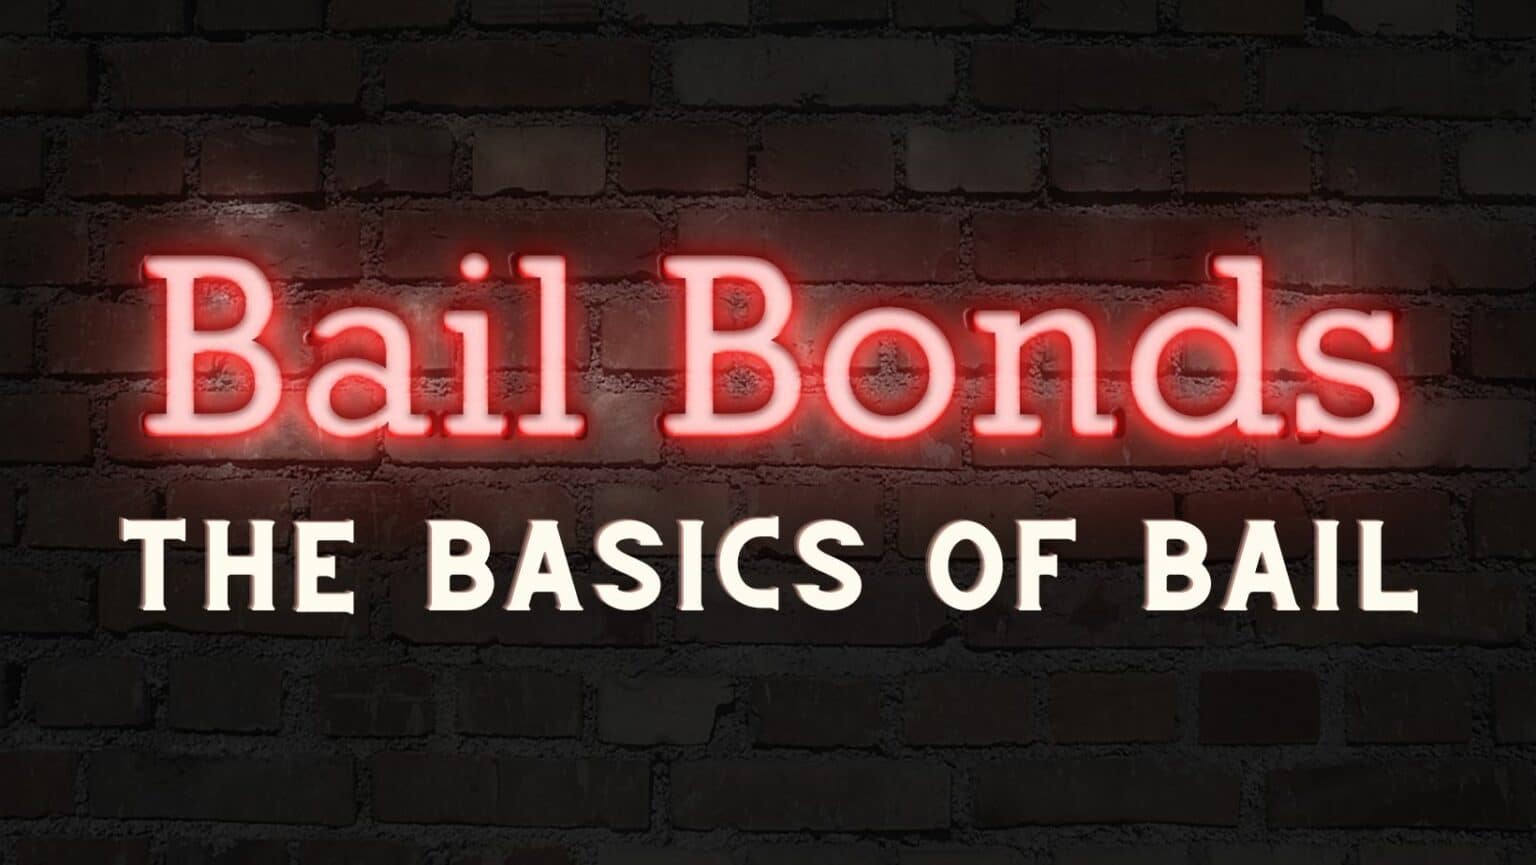 Witt legal - the basics of bail bonds